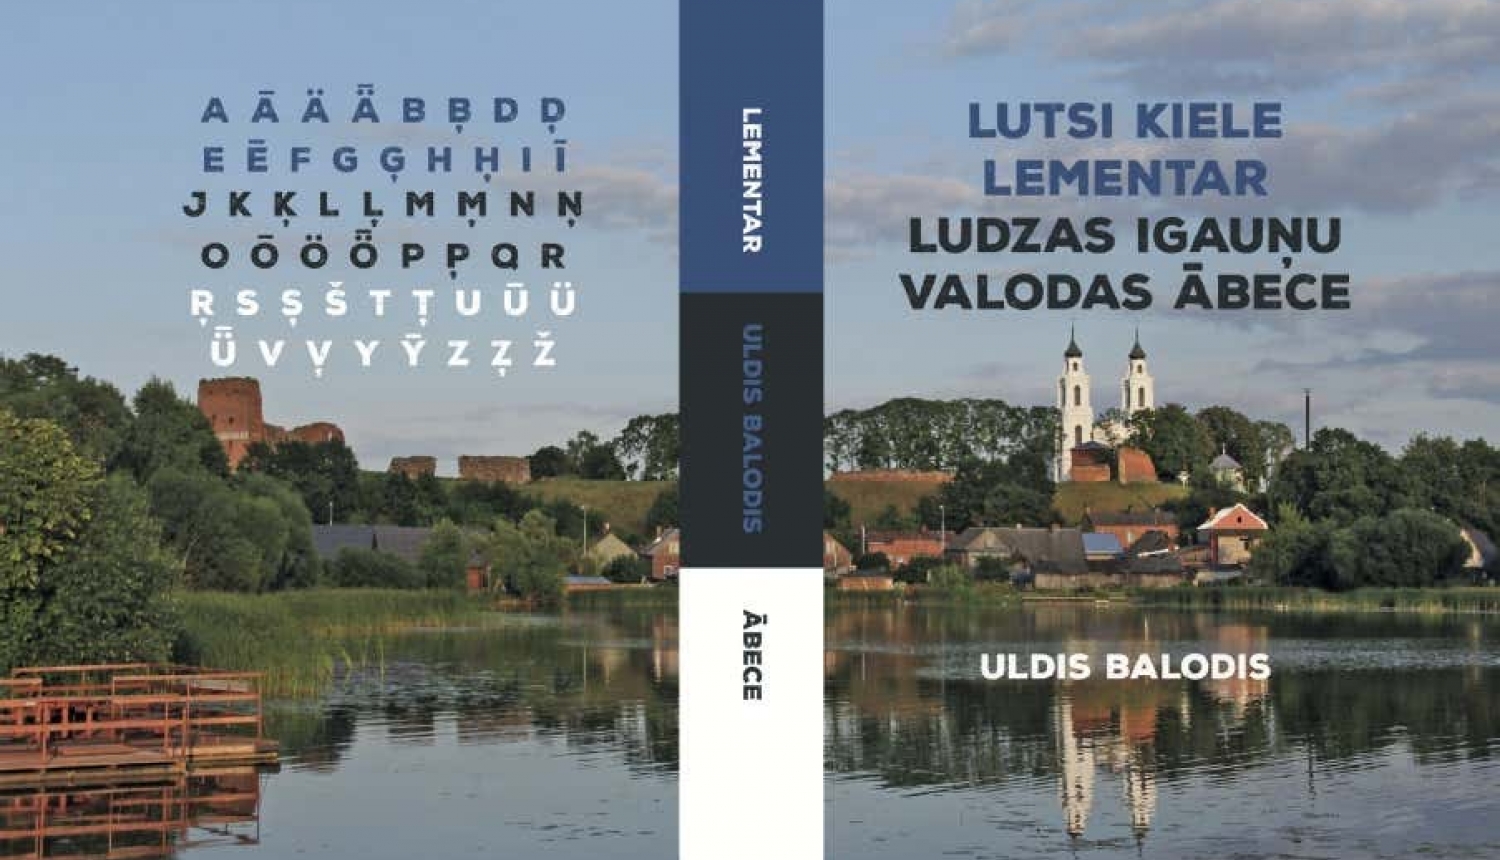 Lutsi jeb Ludzas igauņu valodas ābece ir brīvi pieejama lejupielādei